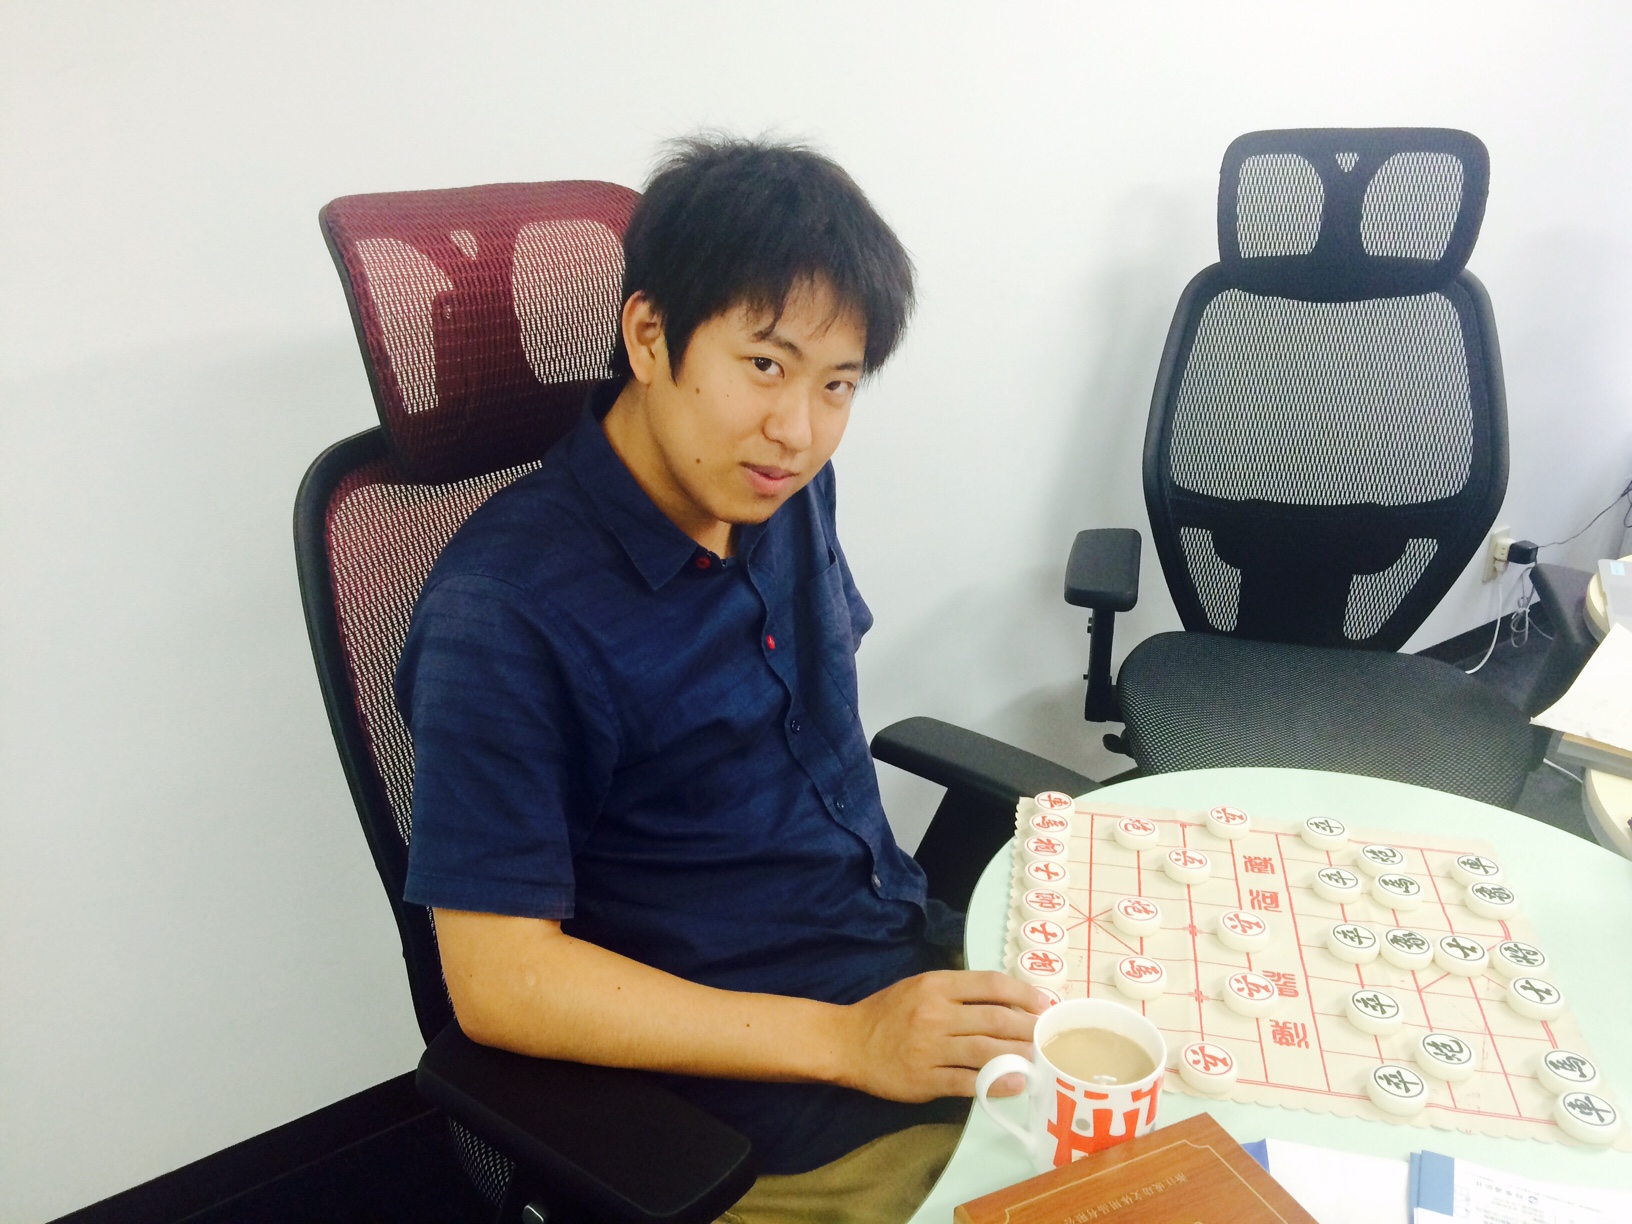 Case #3: A staff working on an internship at I-tsu-tsu, Mr. Takashi Misumi